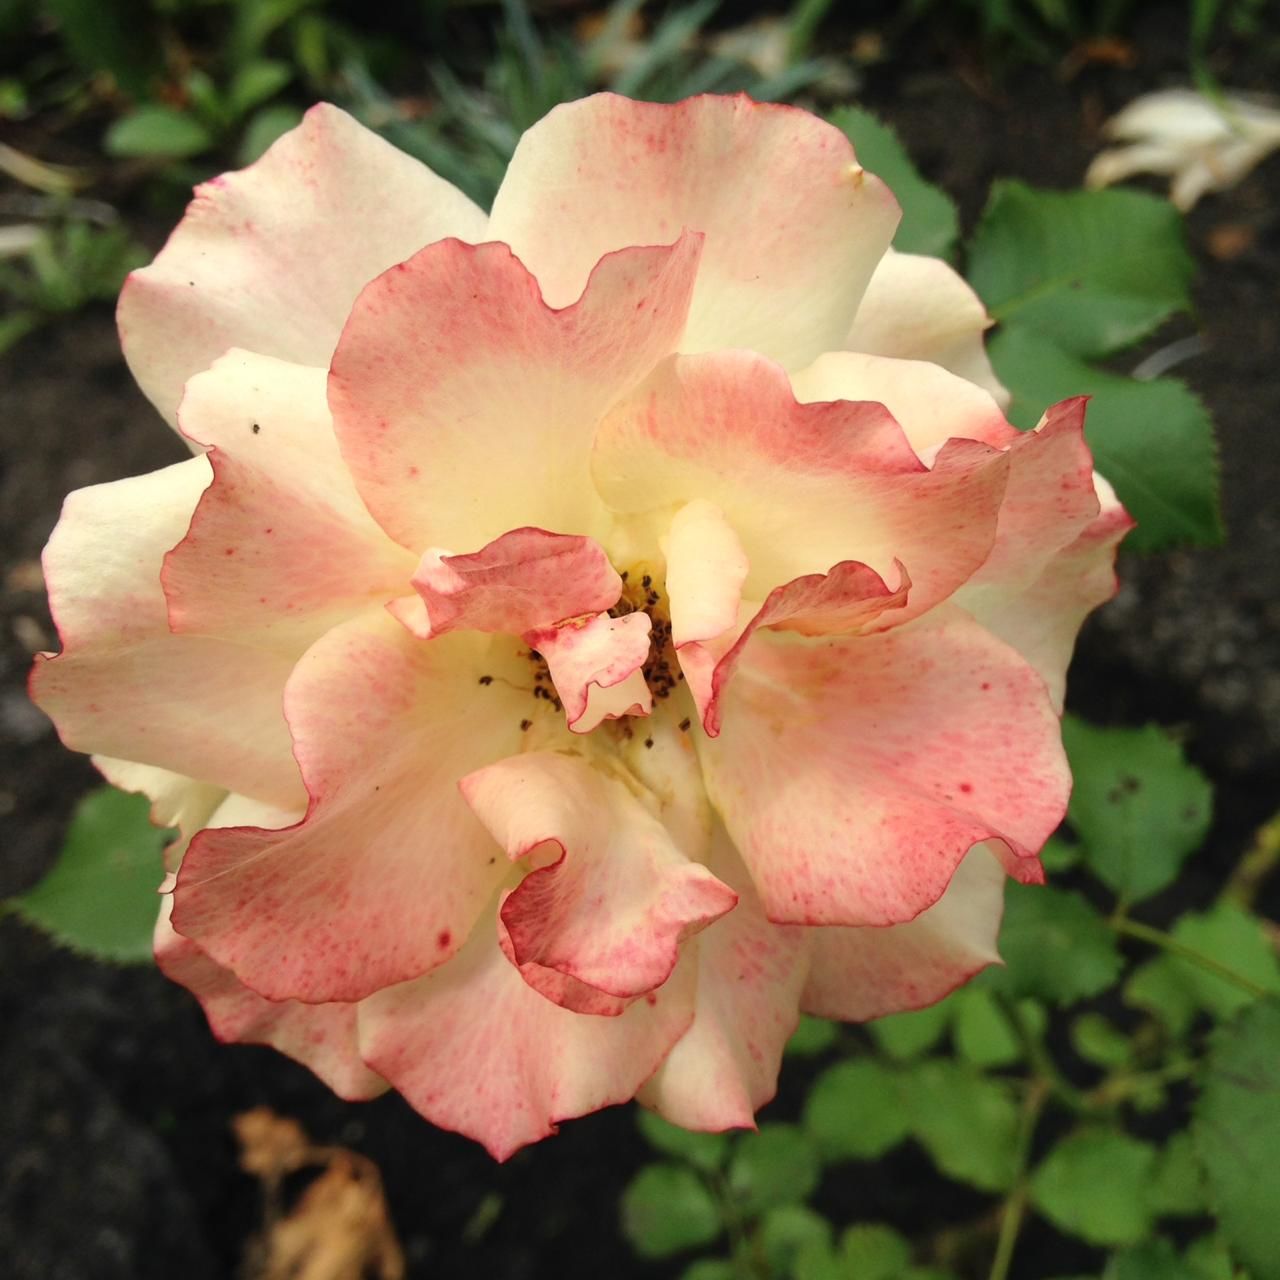 Участница нашего фотоконкурса «Цветы в моем саду»: "Цветы освещают нашу повседневную жизнь, делая ее прекрасной"